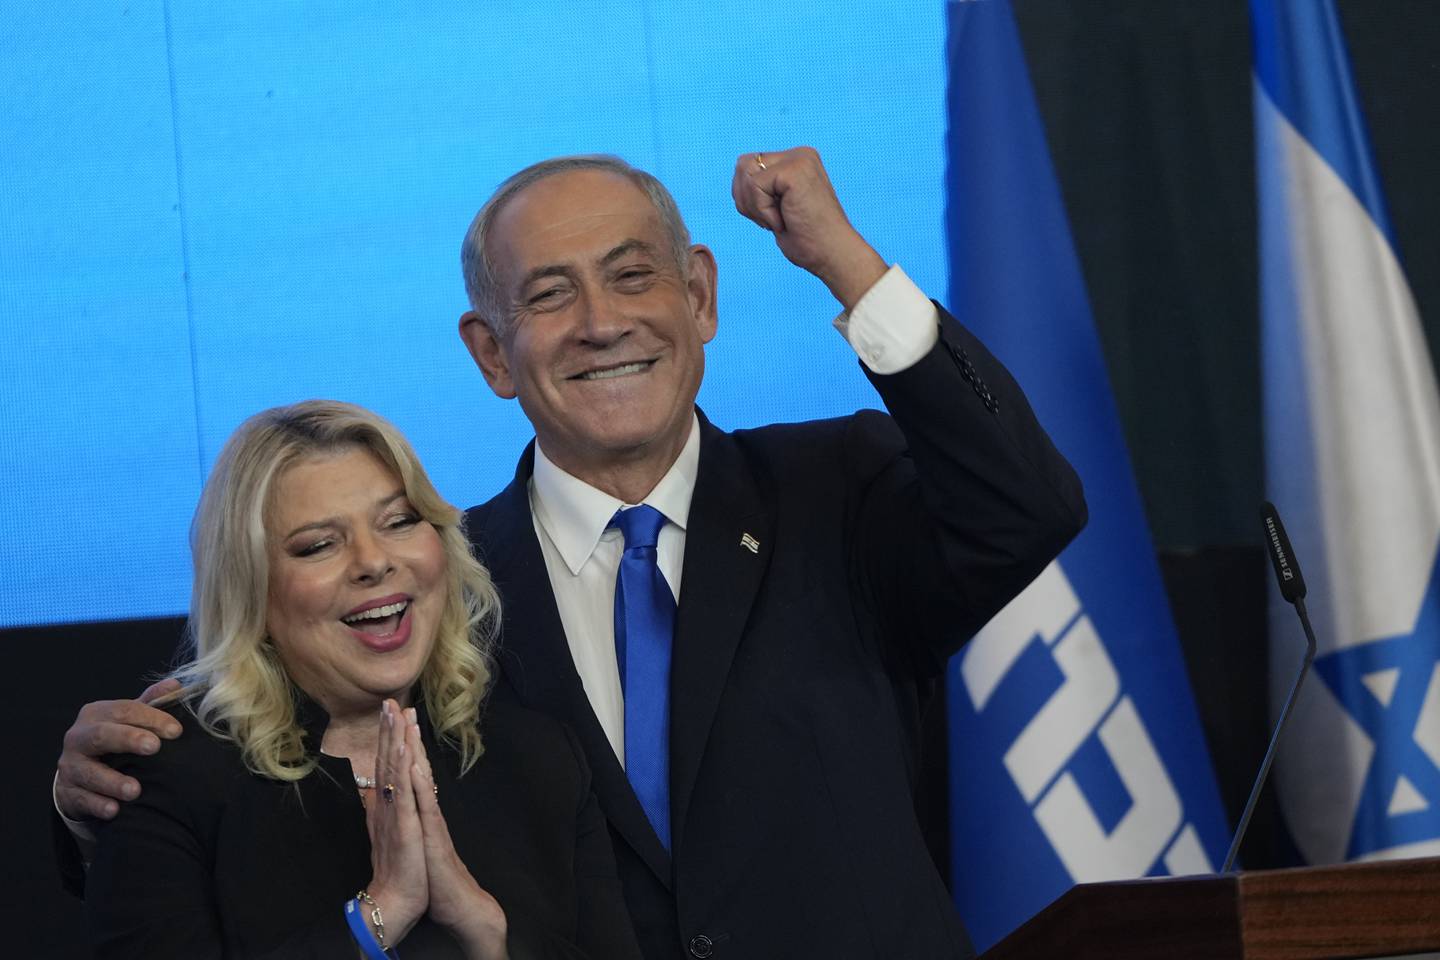 Tidligere statsminister Benjamin Netanyahu feiret Likud-partiets valgseier sammen med kona Sara i partiets hovedkvarter i Jerusalem natt til onsdag. Foto: Tsafrir Abayov / AP / NTB